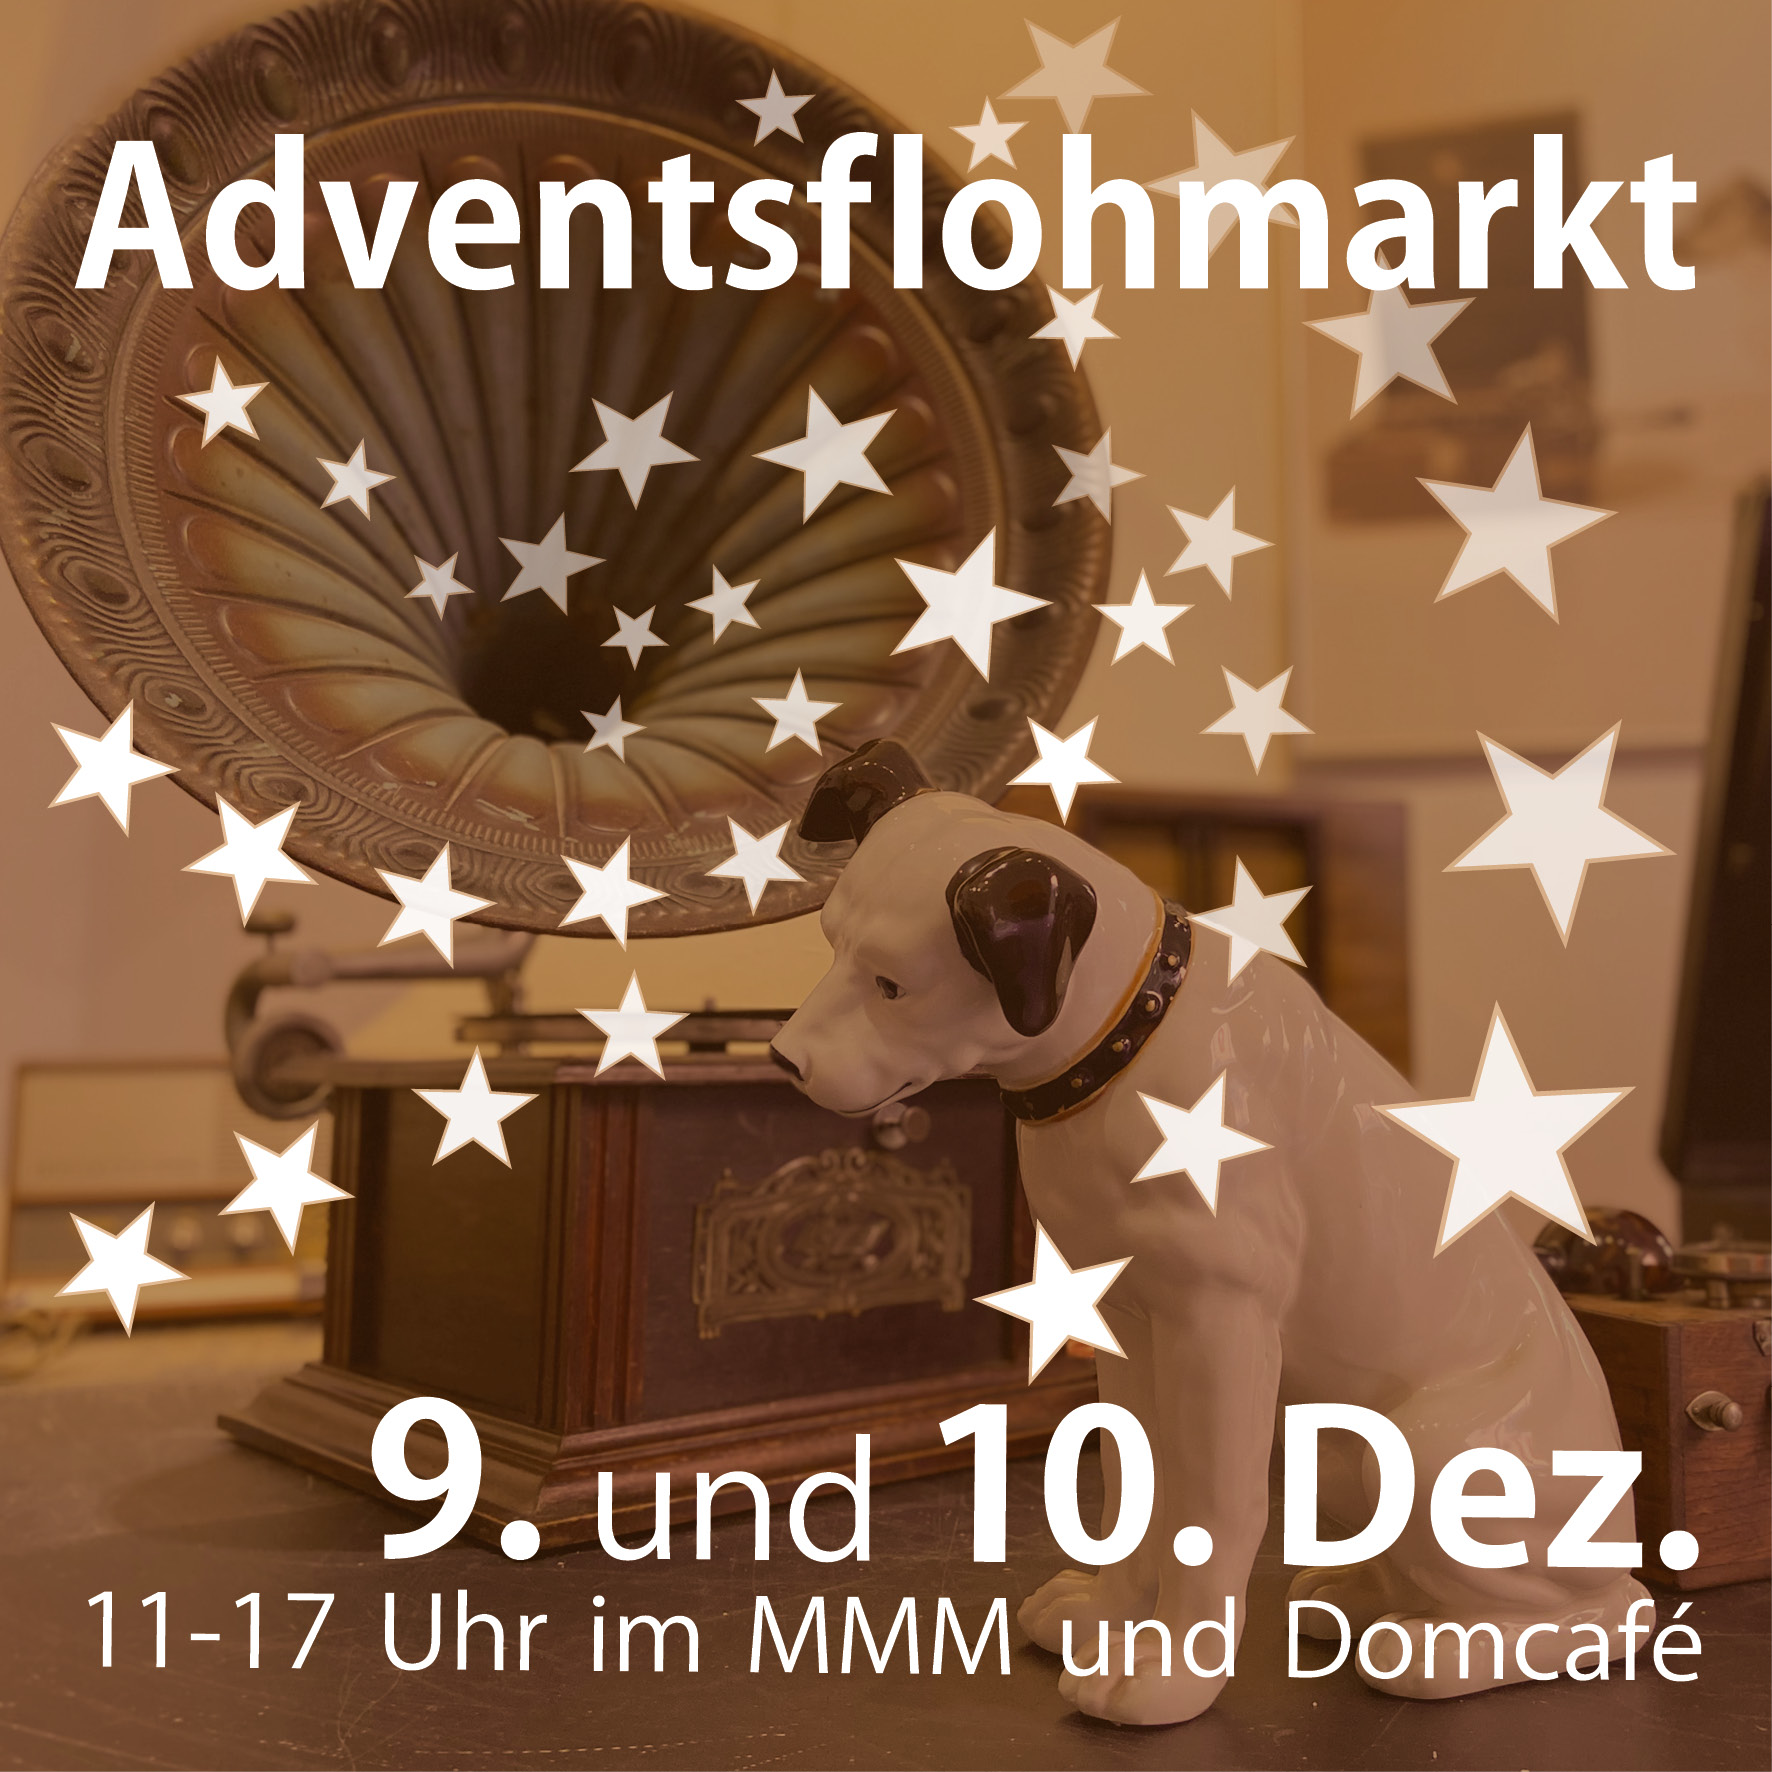 Es weihnachtet sehr: Adventsflohmarkt im MMM am 9. und 10. Dezember!